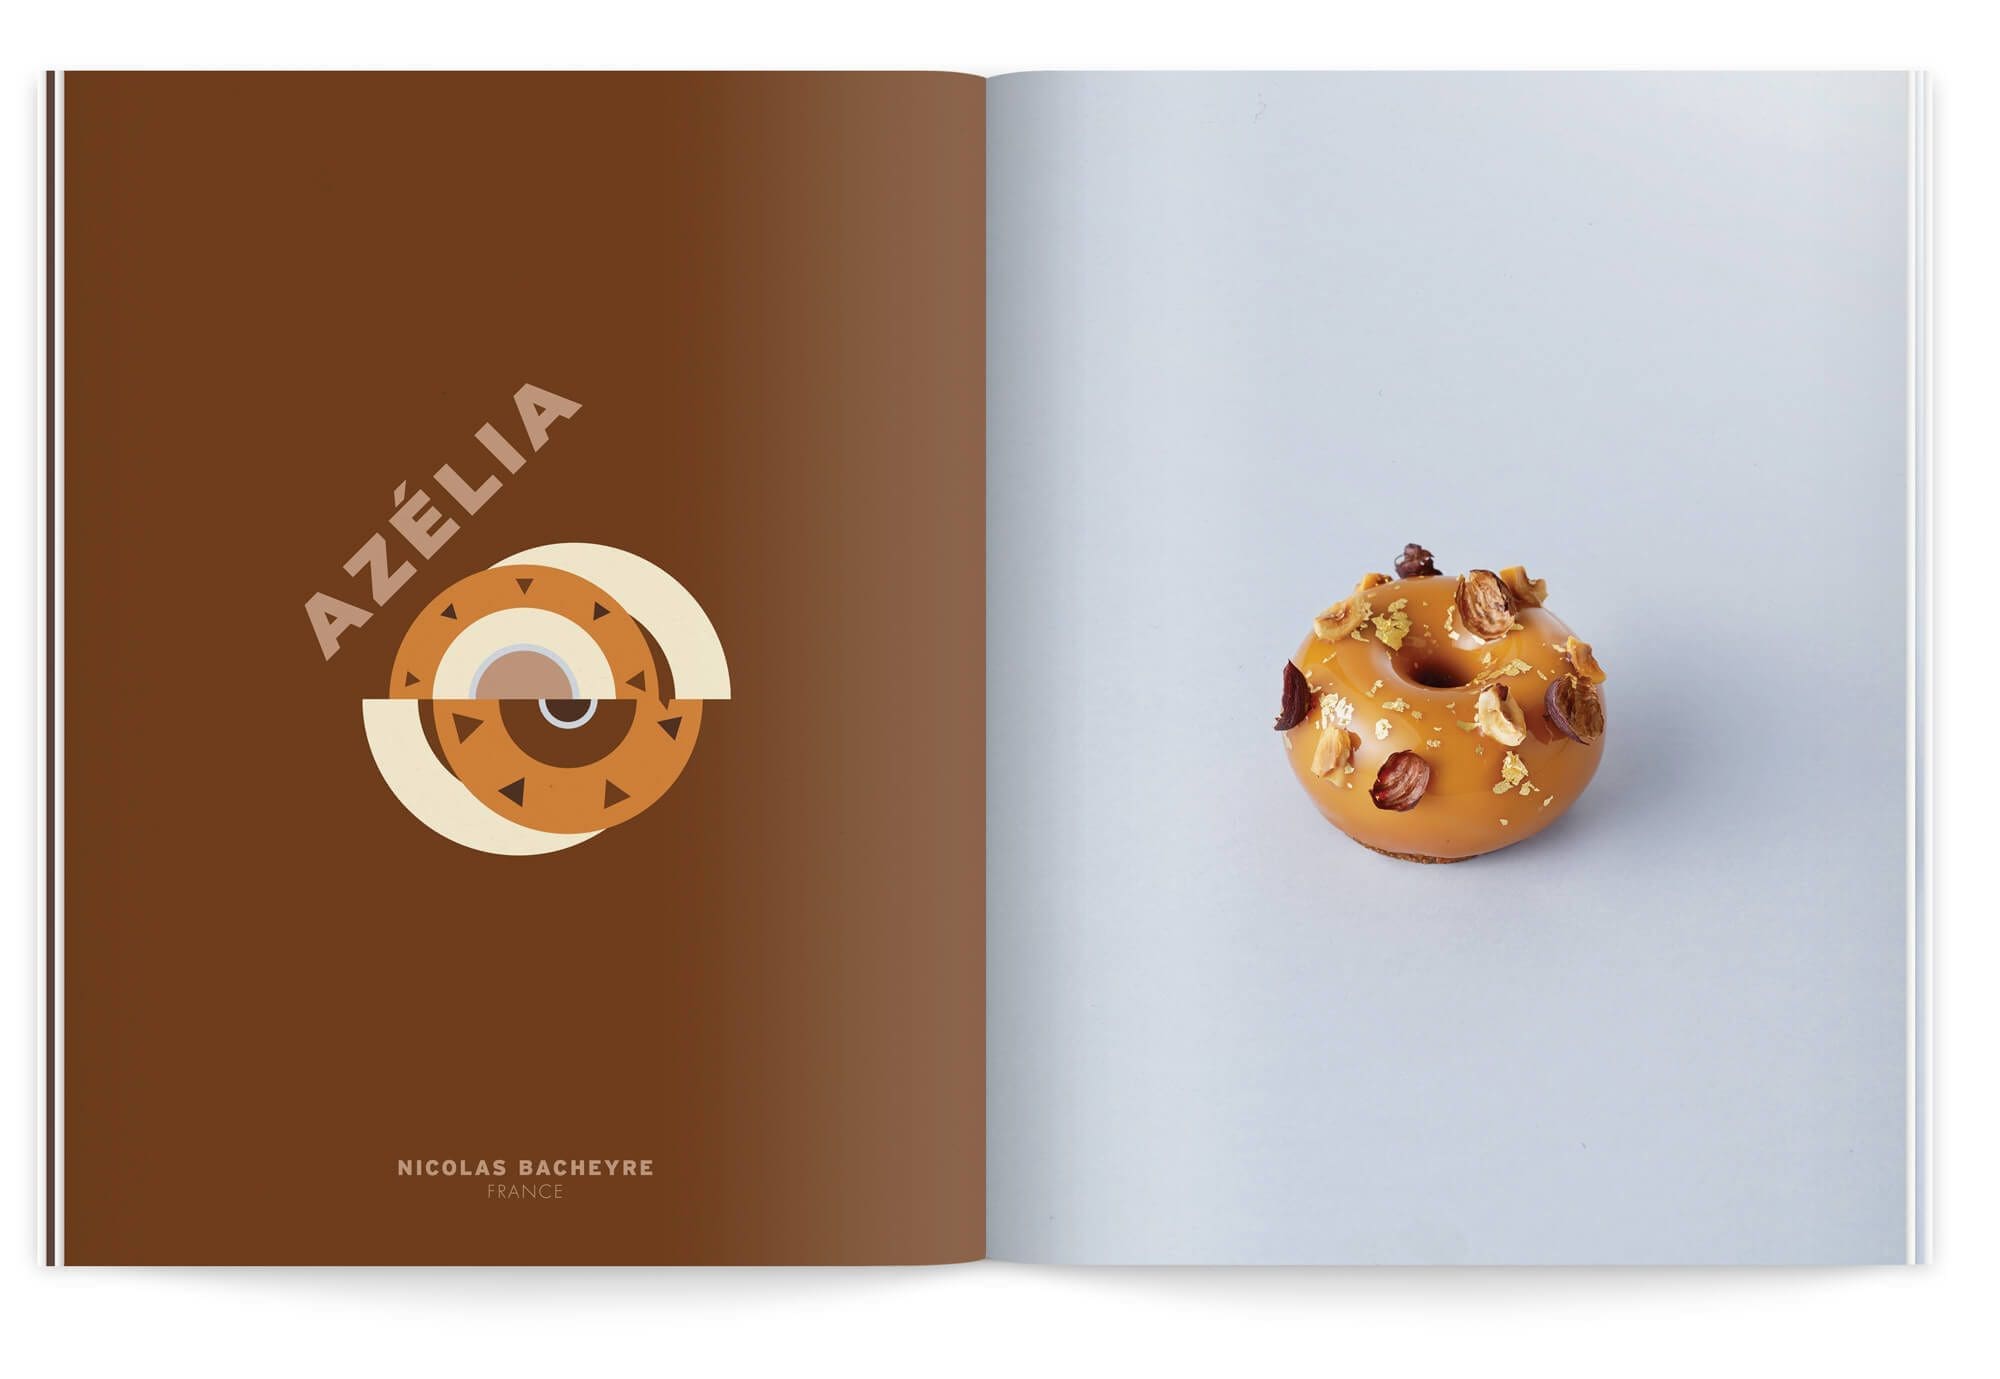 double page de la nouvelle édition la crème de la crème dans des teintes chocolat, Ich&Kar illustre le gâteau azélia de nicolas bacheyre